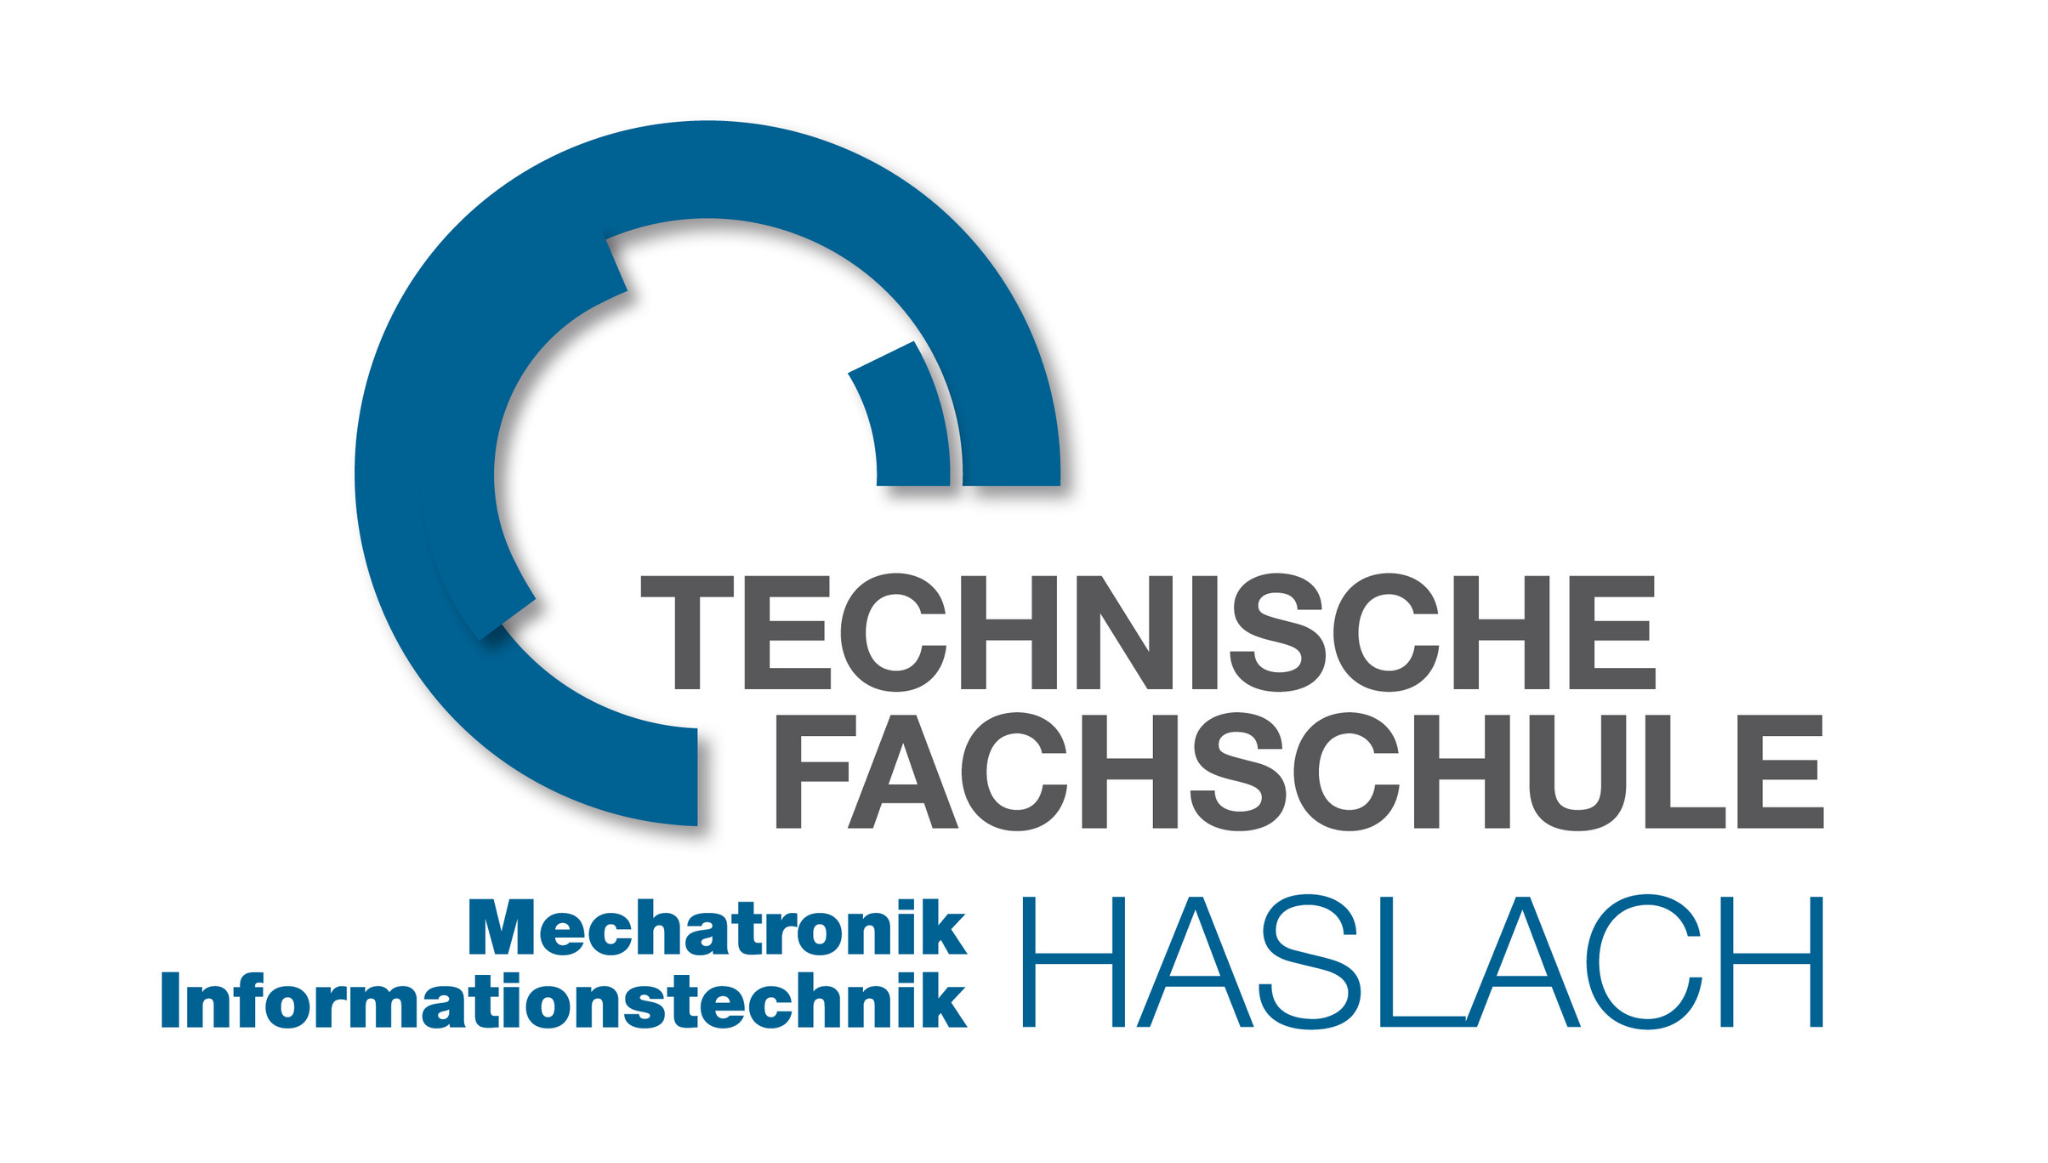 Technische Fachschule Haslach